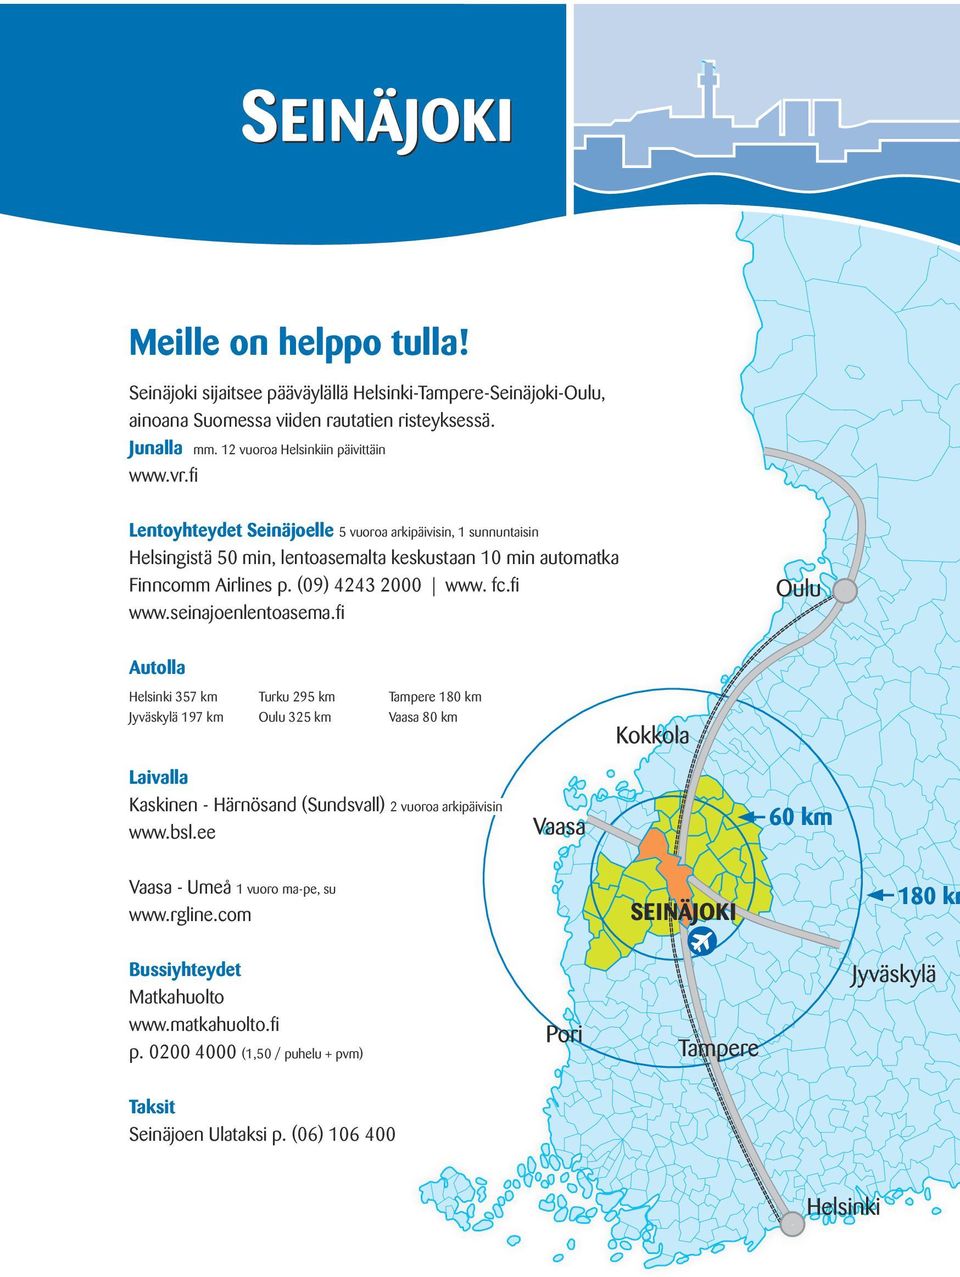 fi Lentoyhteydet Seinäjoelle 5 vuoroa arkipäivisin, 1 sunnuntaisin Helsingistä 50 min, lentoasemalta keskustaan 10 min automatka Finncomm Airlines p. (09) 4243 2000 www. fc.fi www.